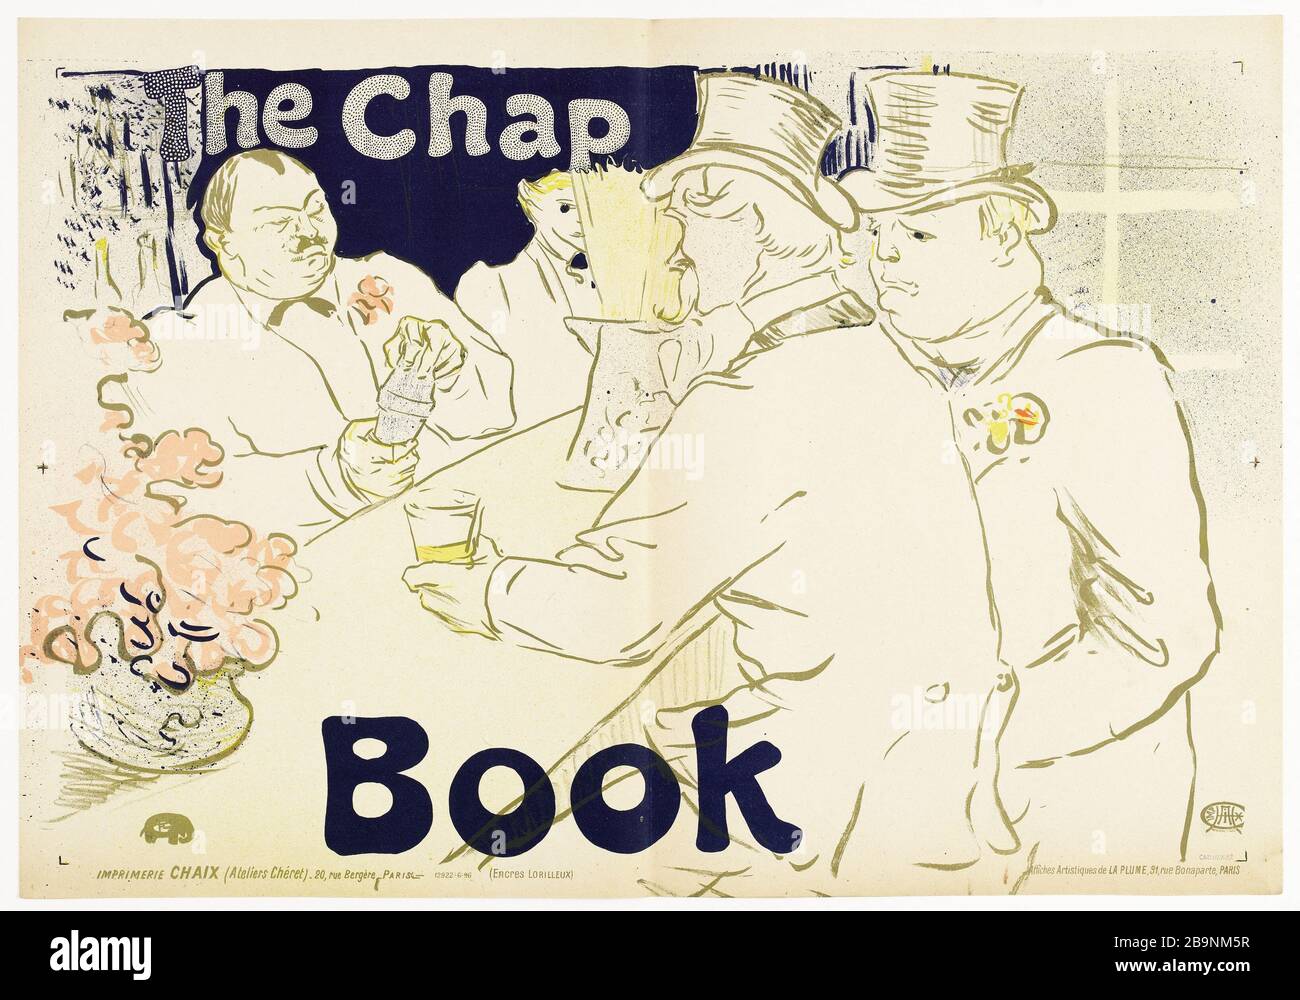 The Chap Book Henri de Toulouse-Lautrec (1864-1901). Affiche pour la revue américaine "The Chap Book". Lithographie couleur, 1895-1896. Imprimeur Chaix. Paris, musée Carnavalet. Stock Photo